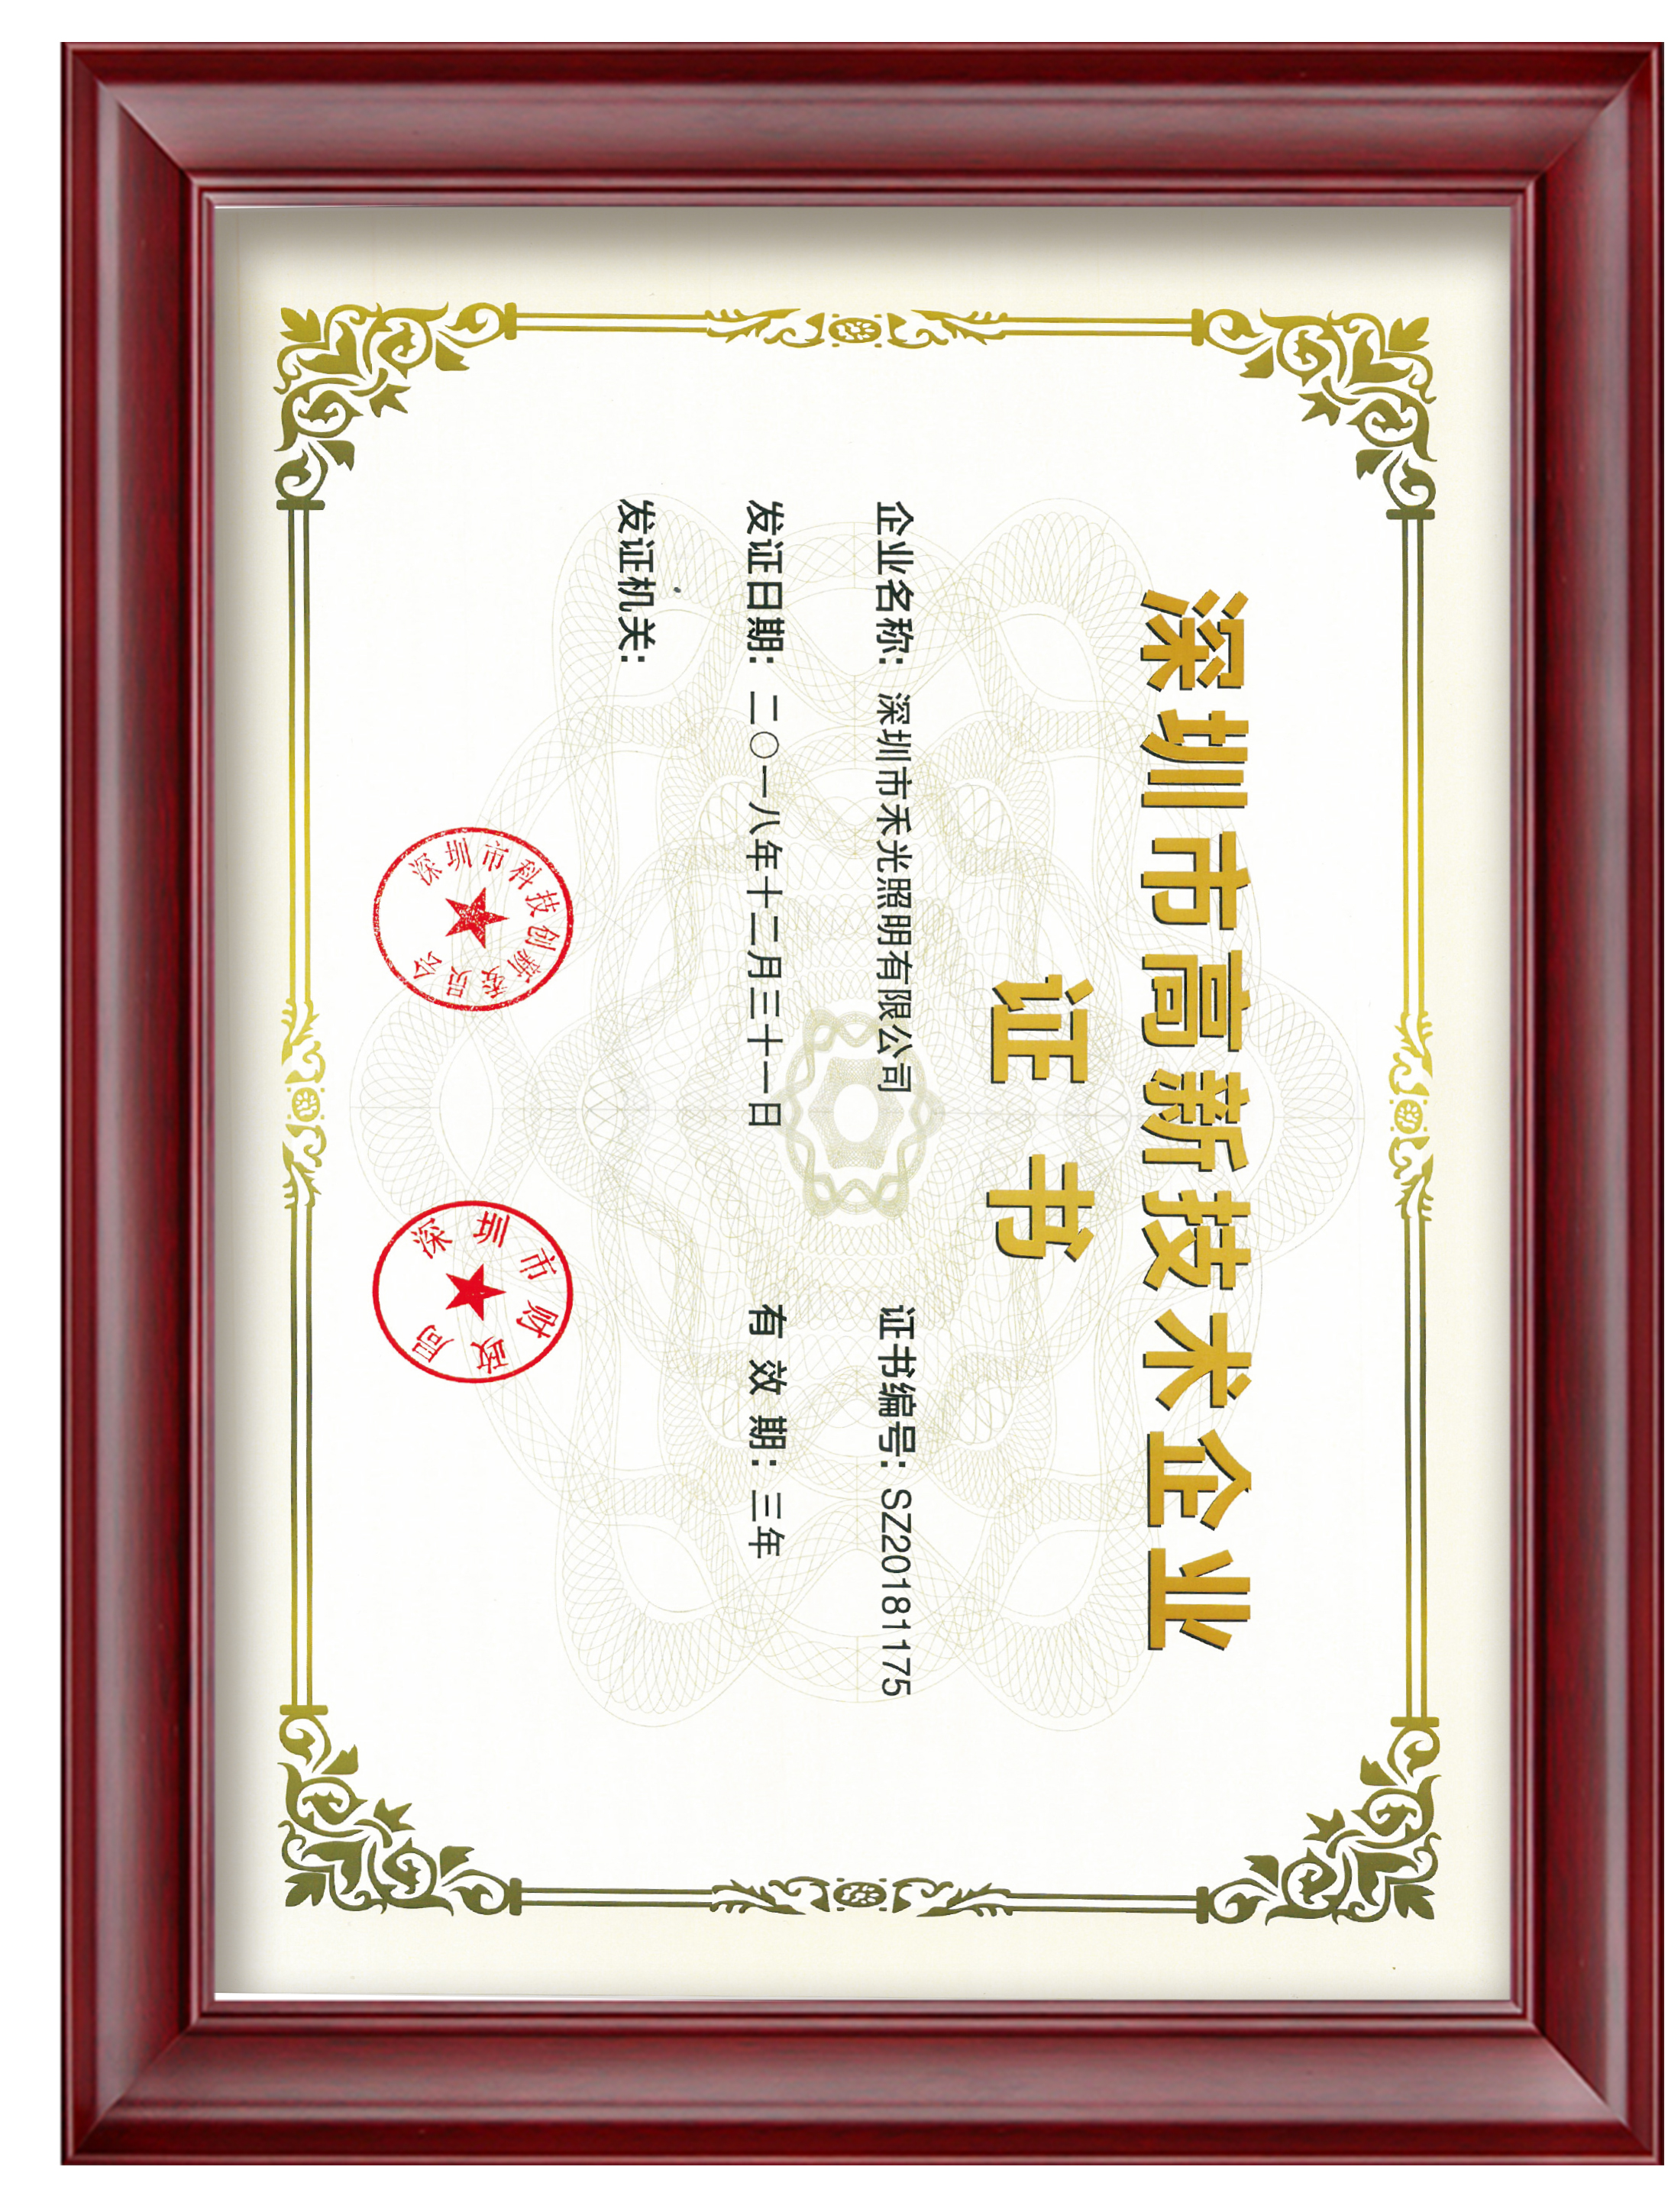 12. Certifikata e Ndërmarrjes së teknologjisë së lartë Shenzhen